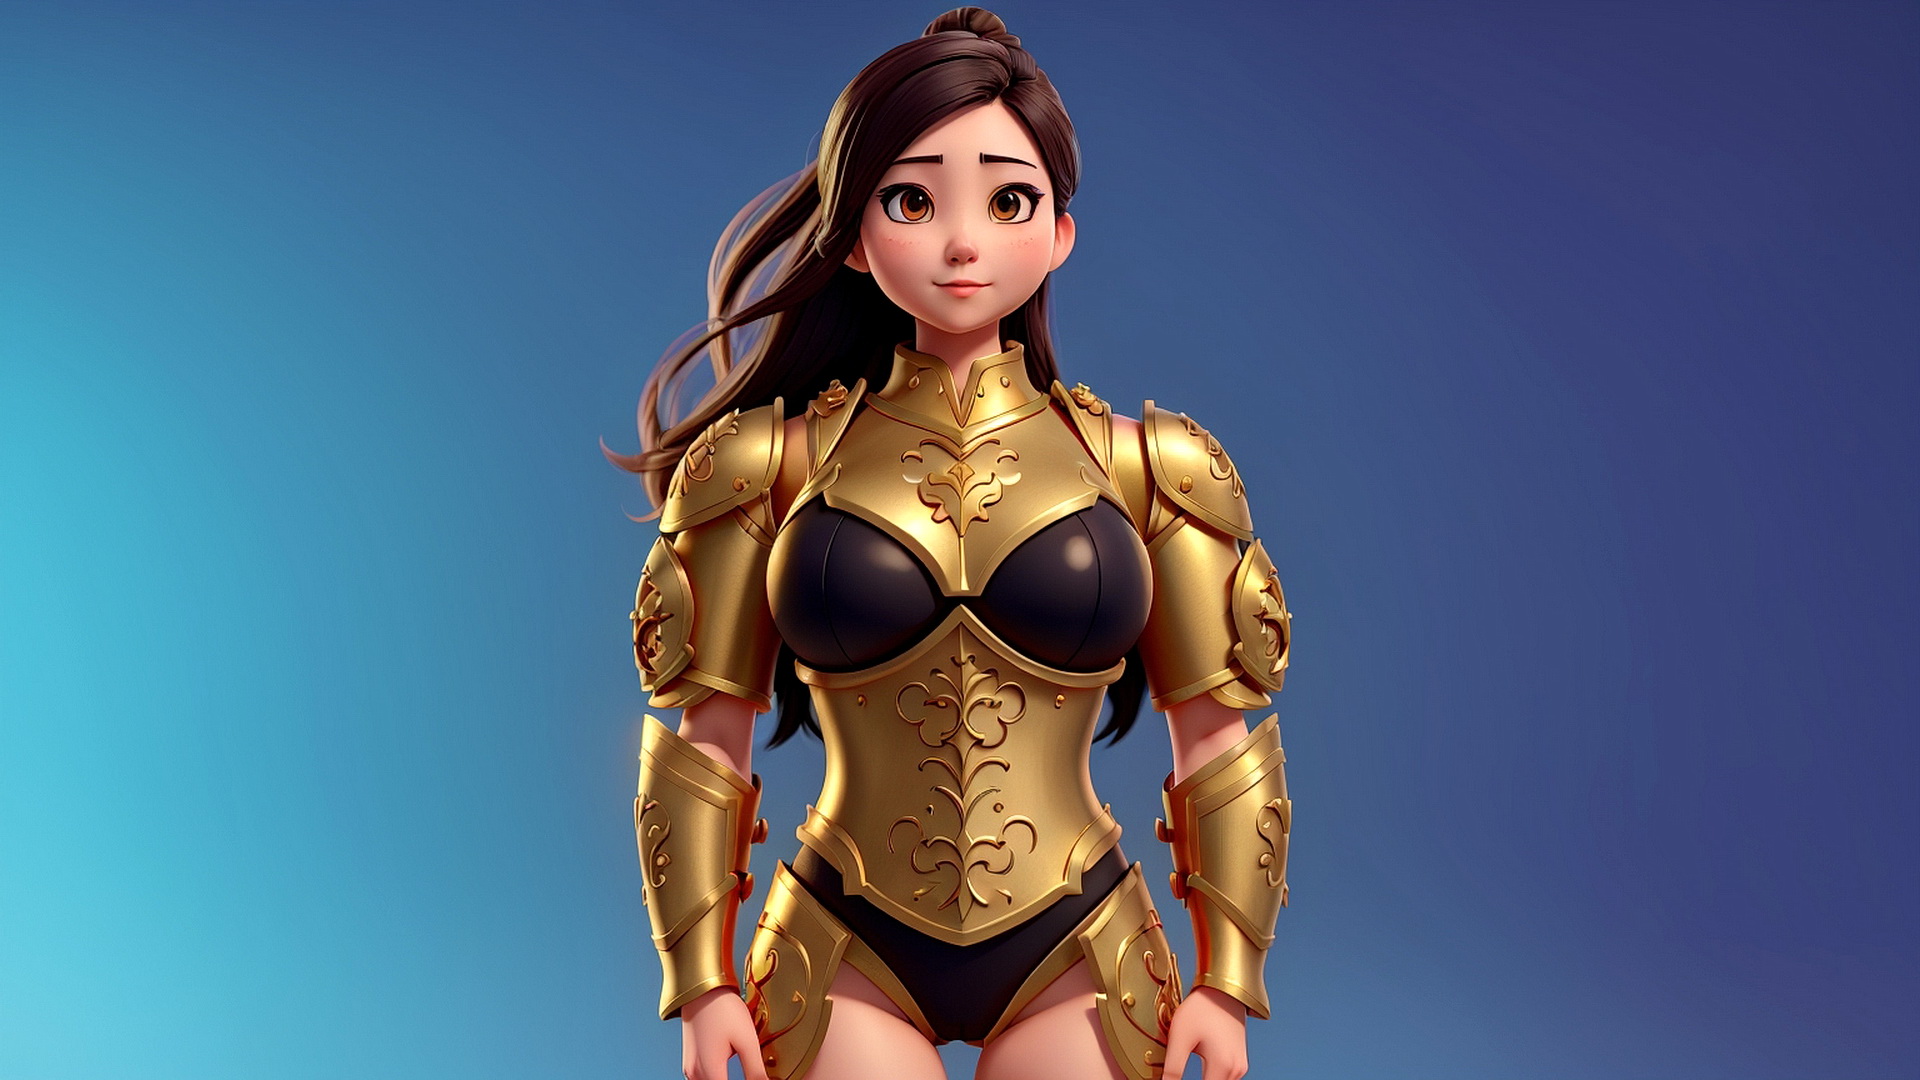 身着金色盔甲的女战士站在蓝色背景上